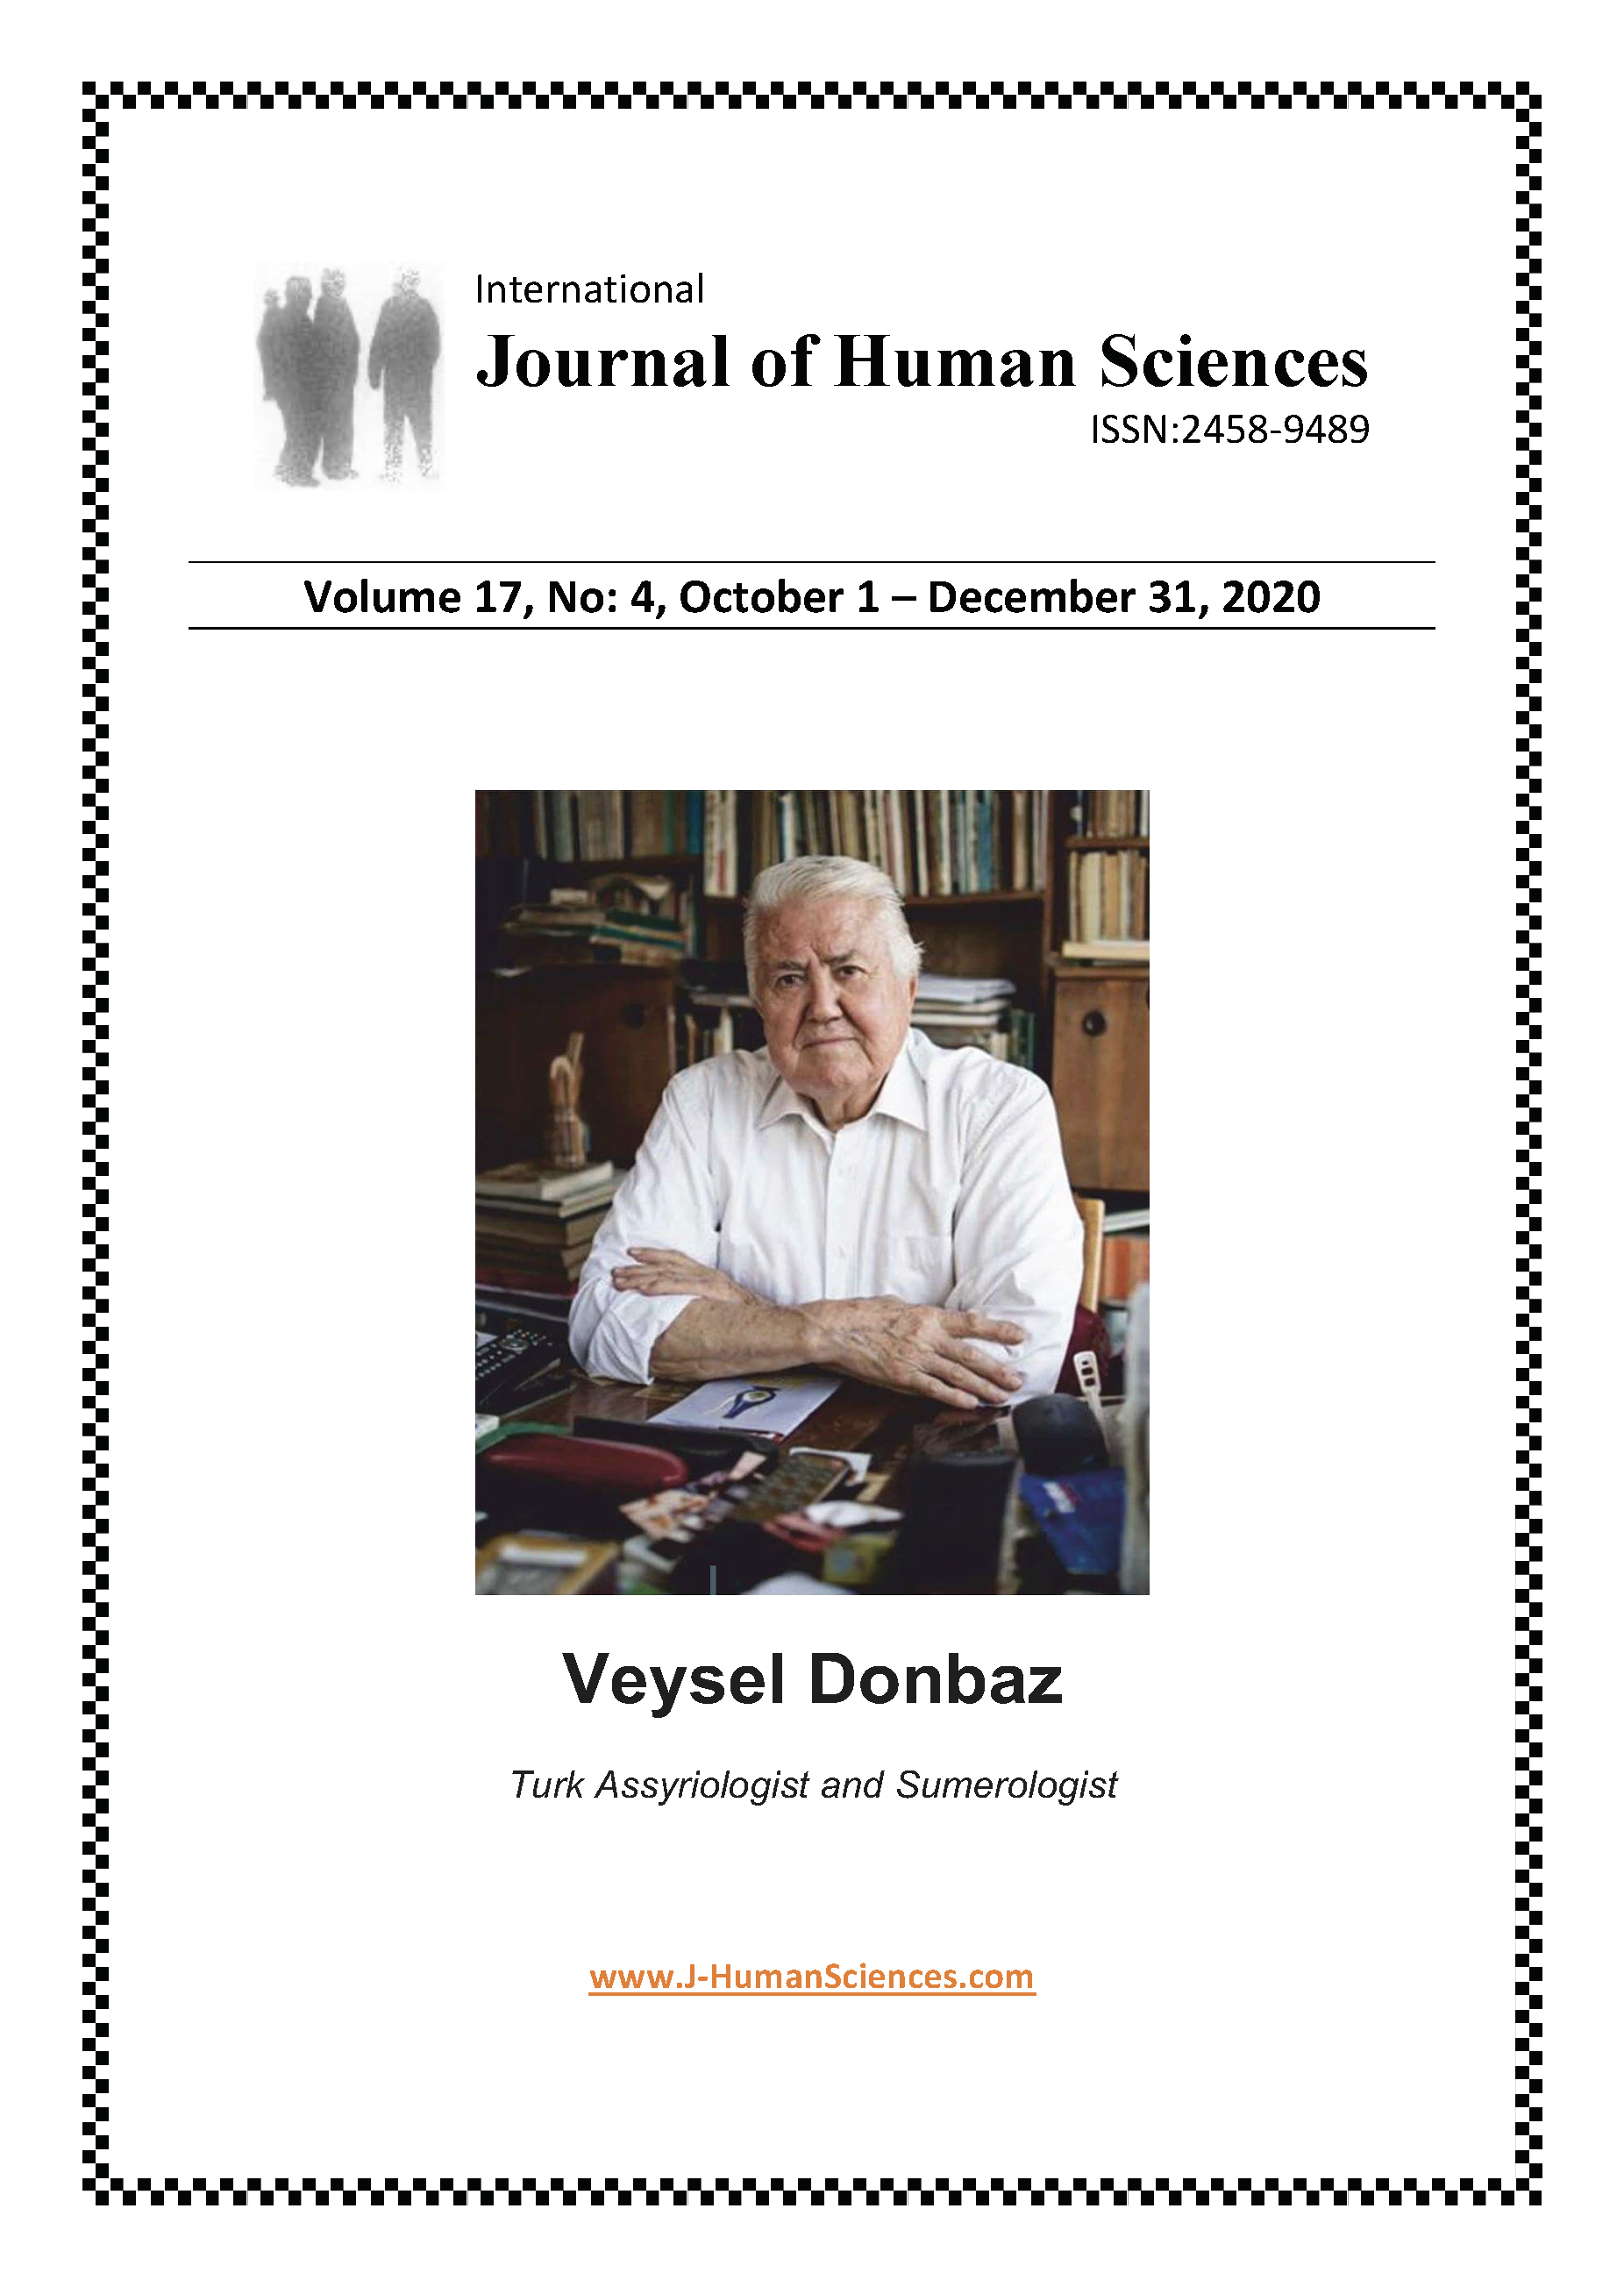 Veysel Donbaz (Turk Assyriologist and Sumerologist)